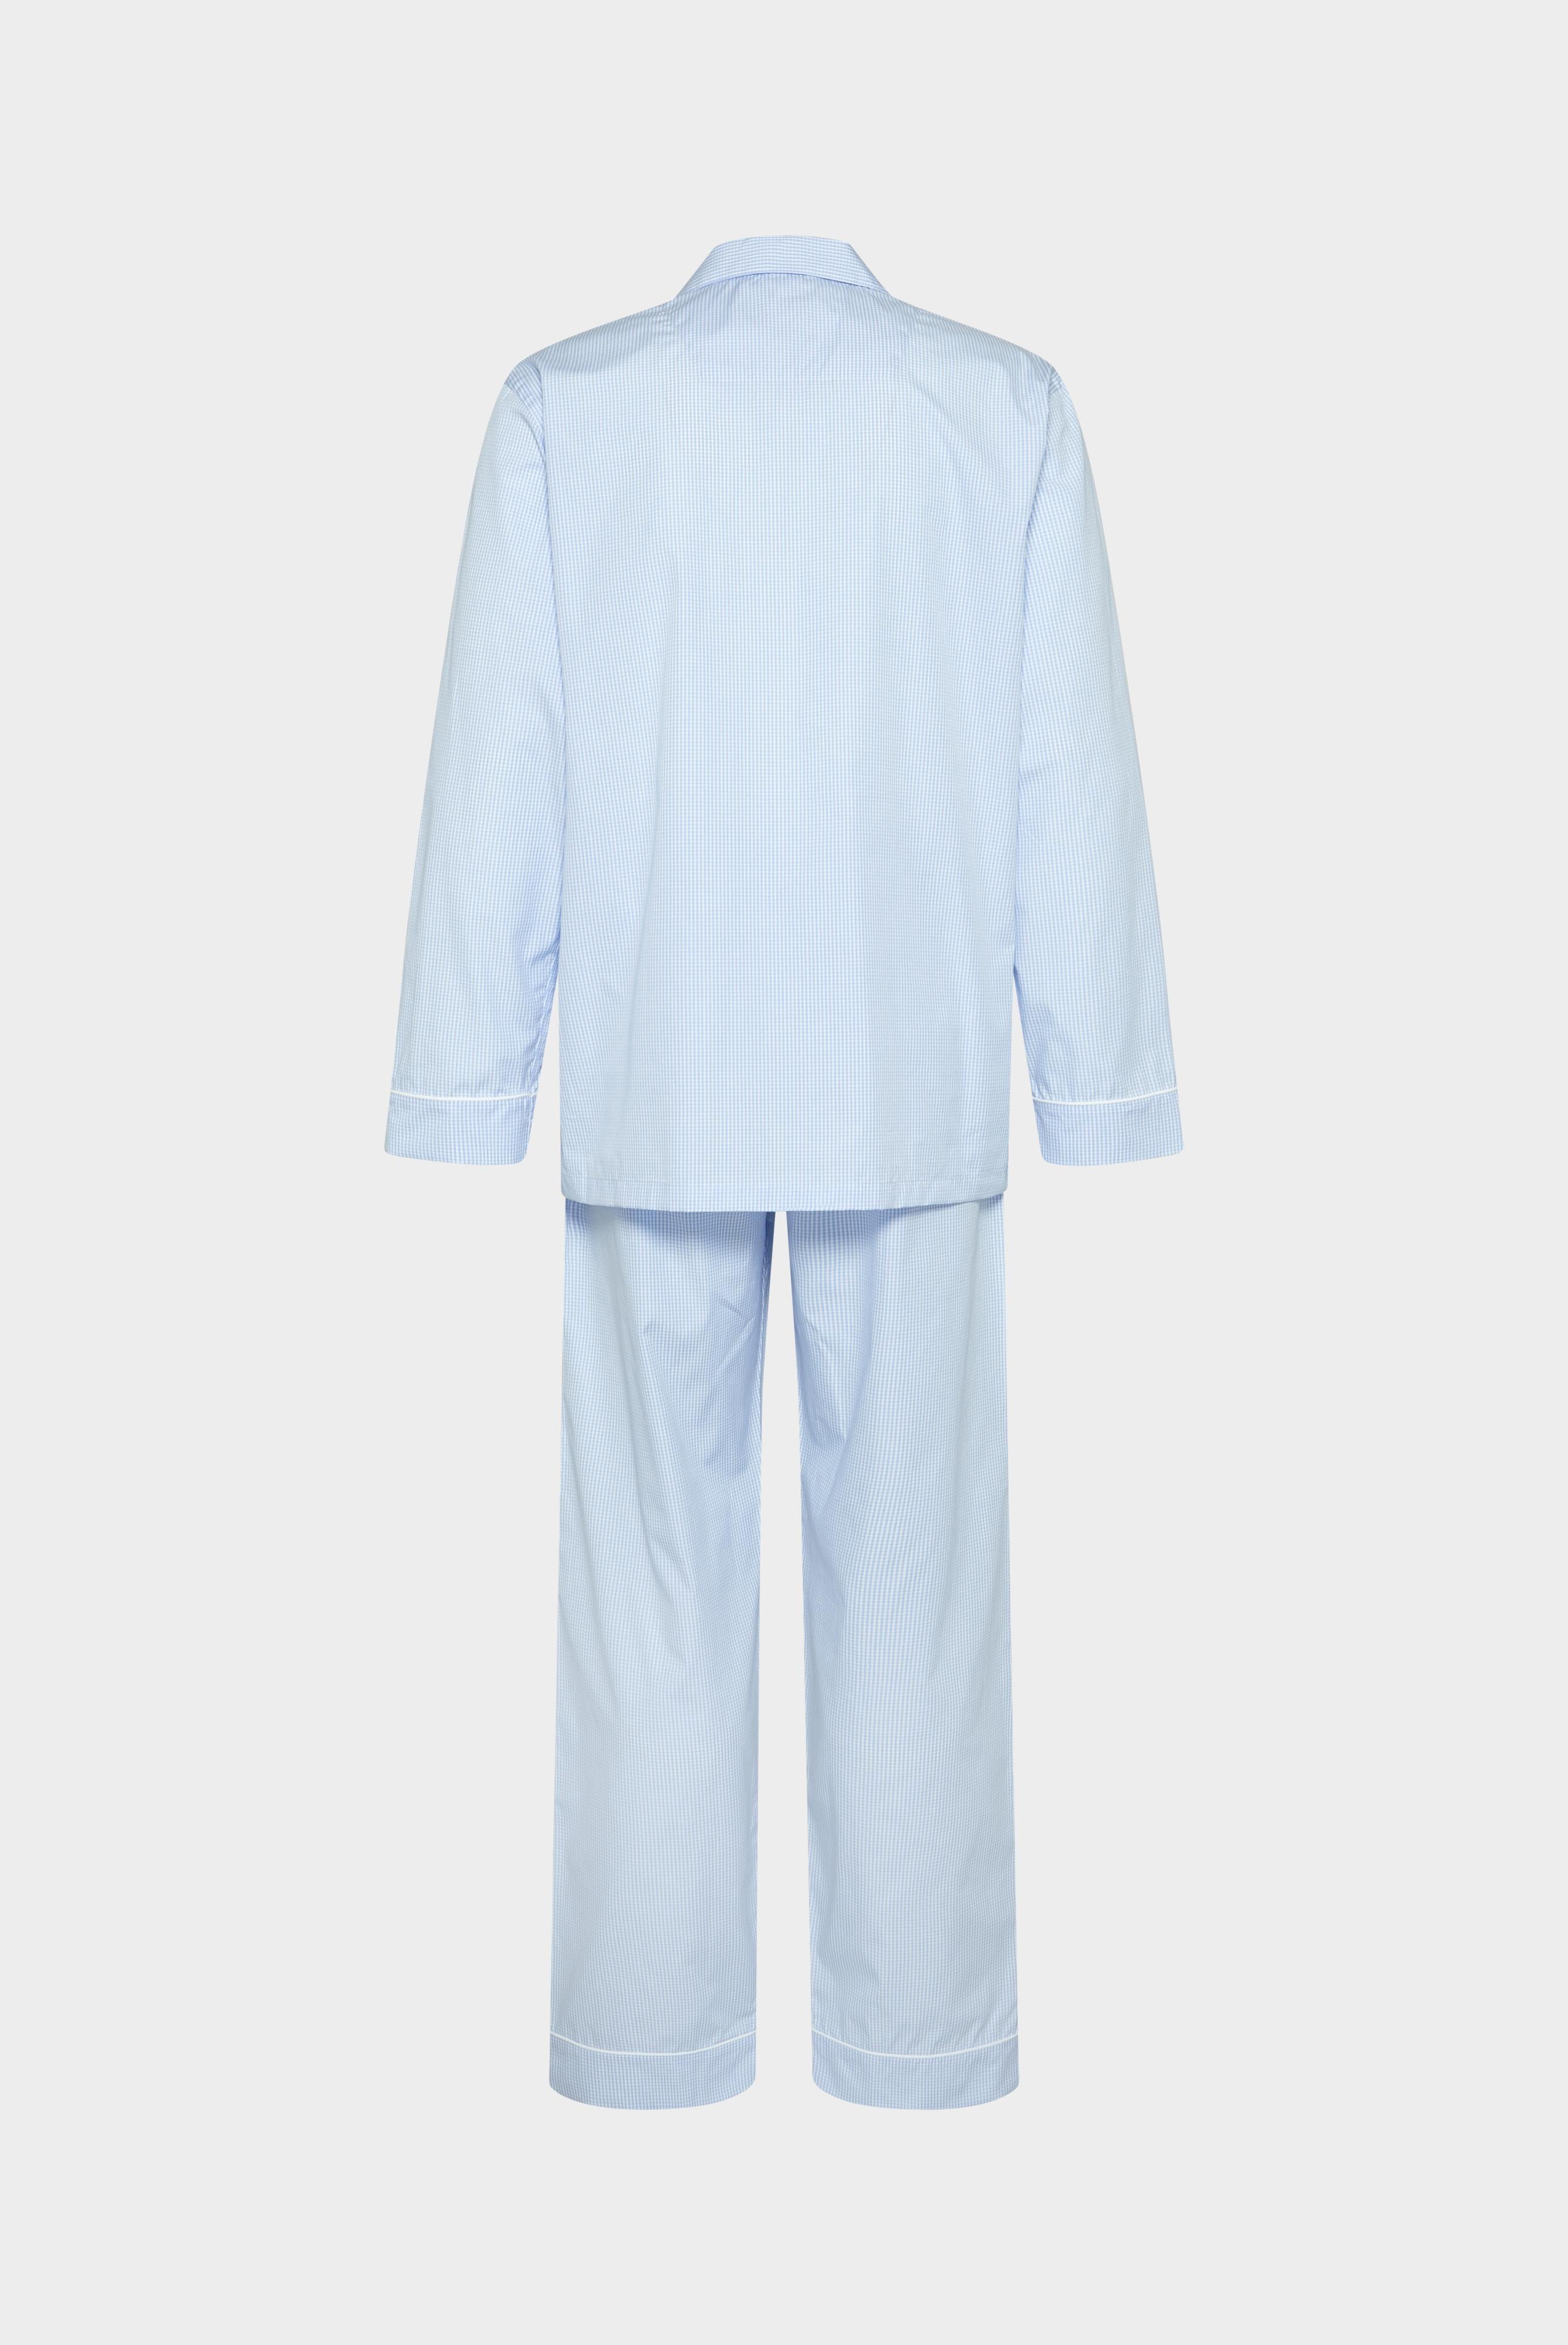 Pyjamas+Thin Striped Poplin Pyjamas+91.1139.UK.141787.720.46